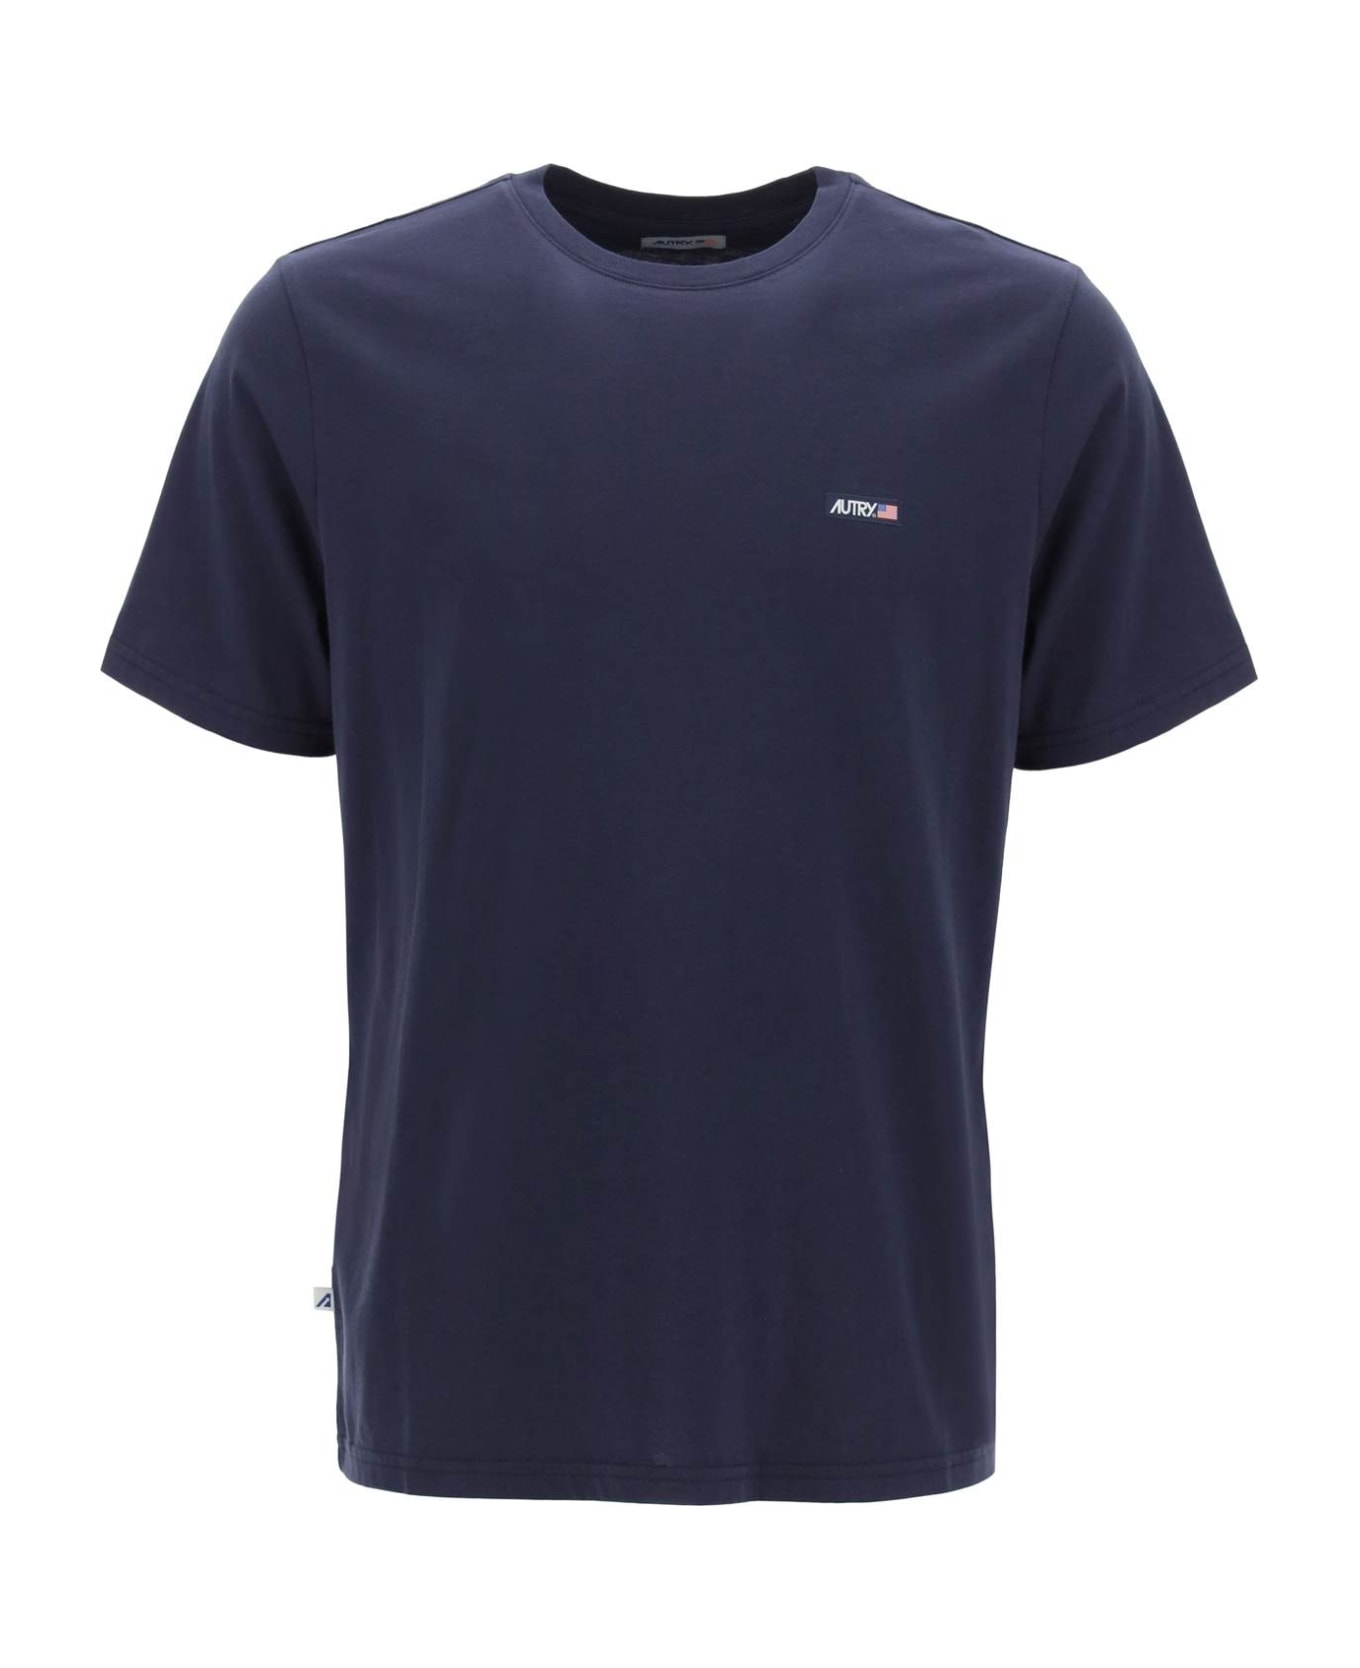 Autry Logo Patch T-shirt - Blue Tシャツ